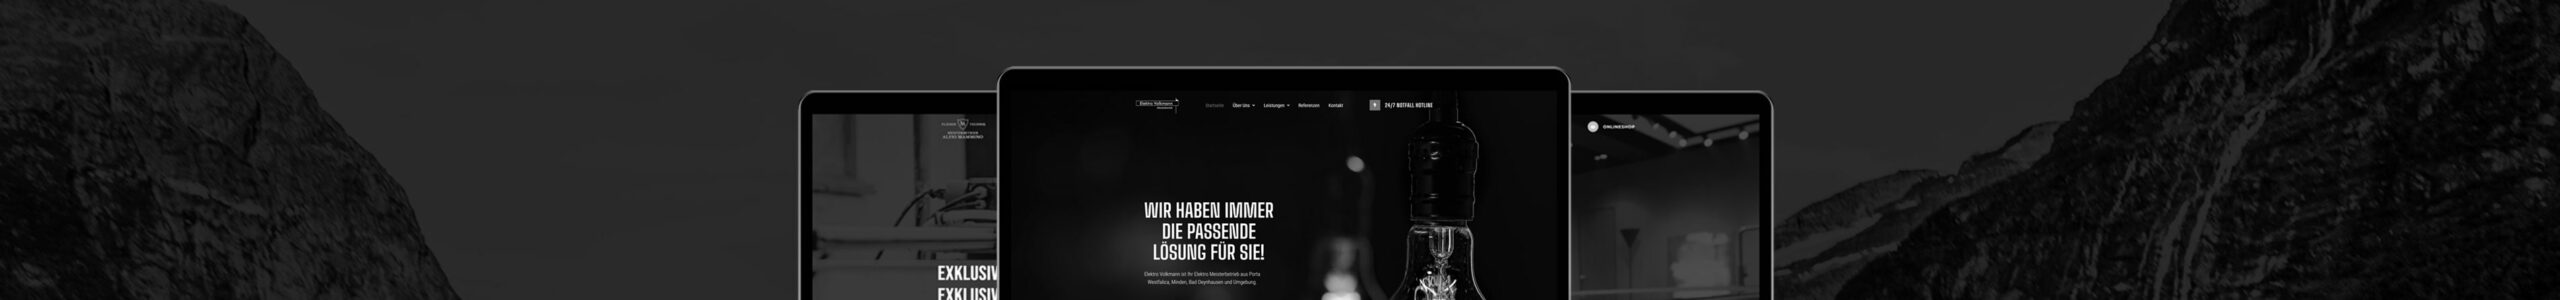 sixtyweb-Agency-Werbeagentur-Handwerker-Webseiten-Website-Socialmedia-Agentur-SEO-Suchmaschinenoptimierung-Logo-Print-Minden-Bielefeld-Hannover-Herford-Leistung-Homepage-Buero-Homepage3-min